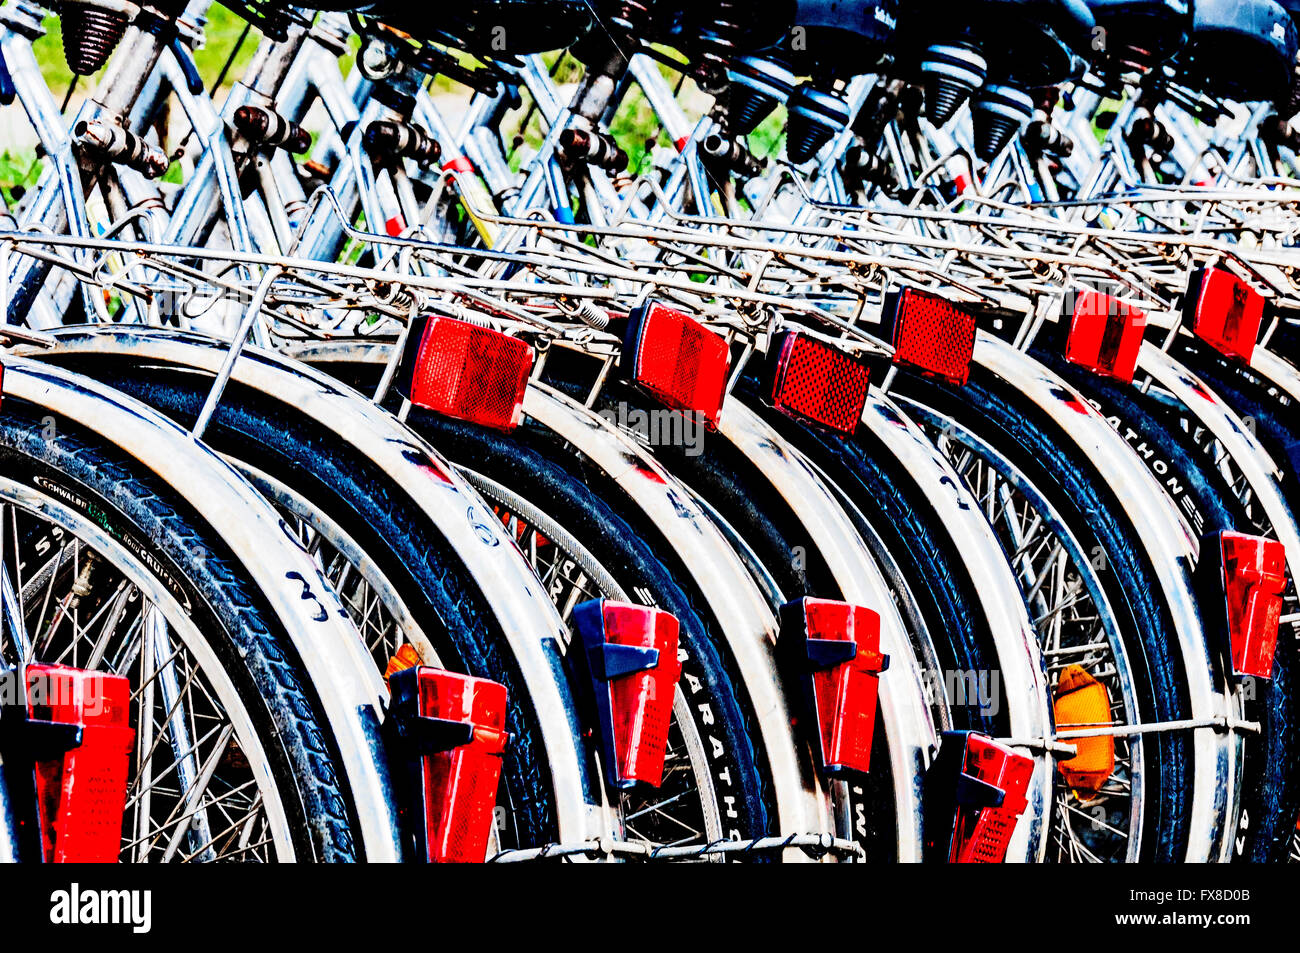 Bikes for rent in a tourist destination; Leihfahrräder in einem Ferienort Stock Photo